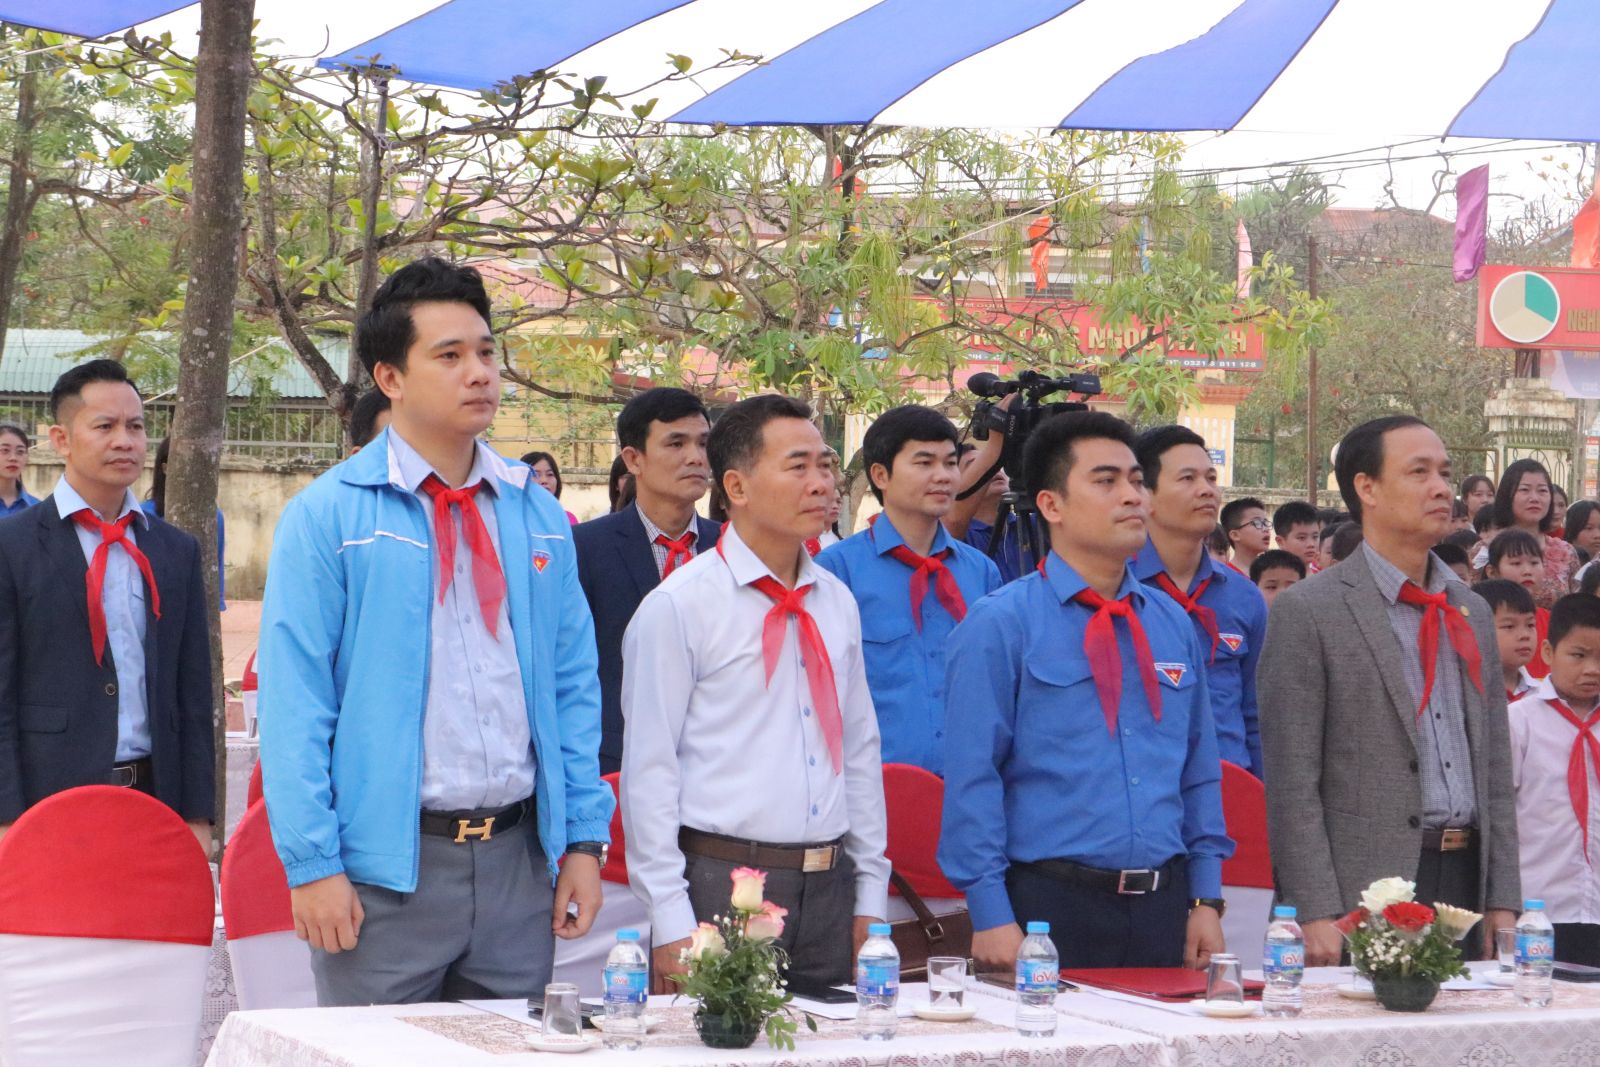 Các đồng chí lãnh đạo tỉnh đoàn, lãnh đạo sở giáo dục, lãnh đạo huyện ủy Kim động làm lễ chào cờ